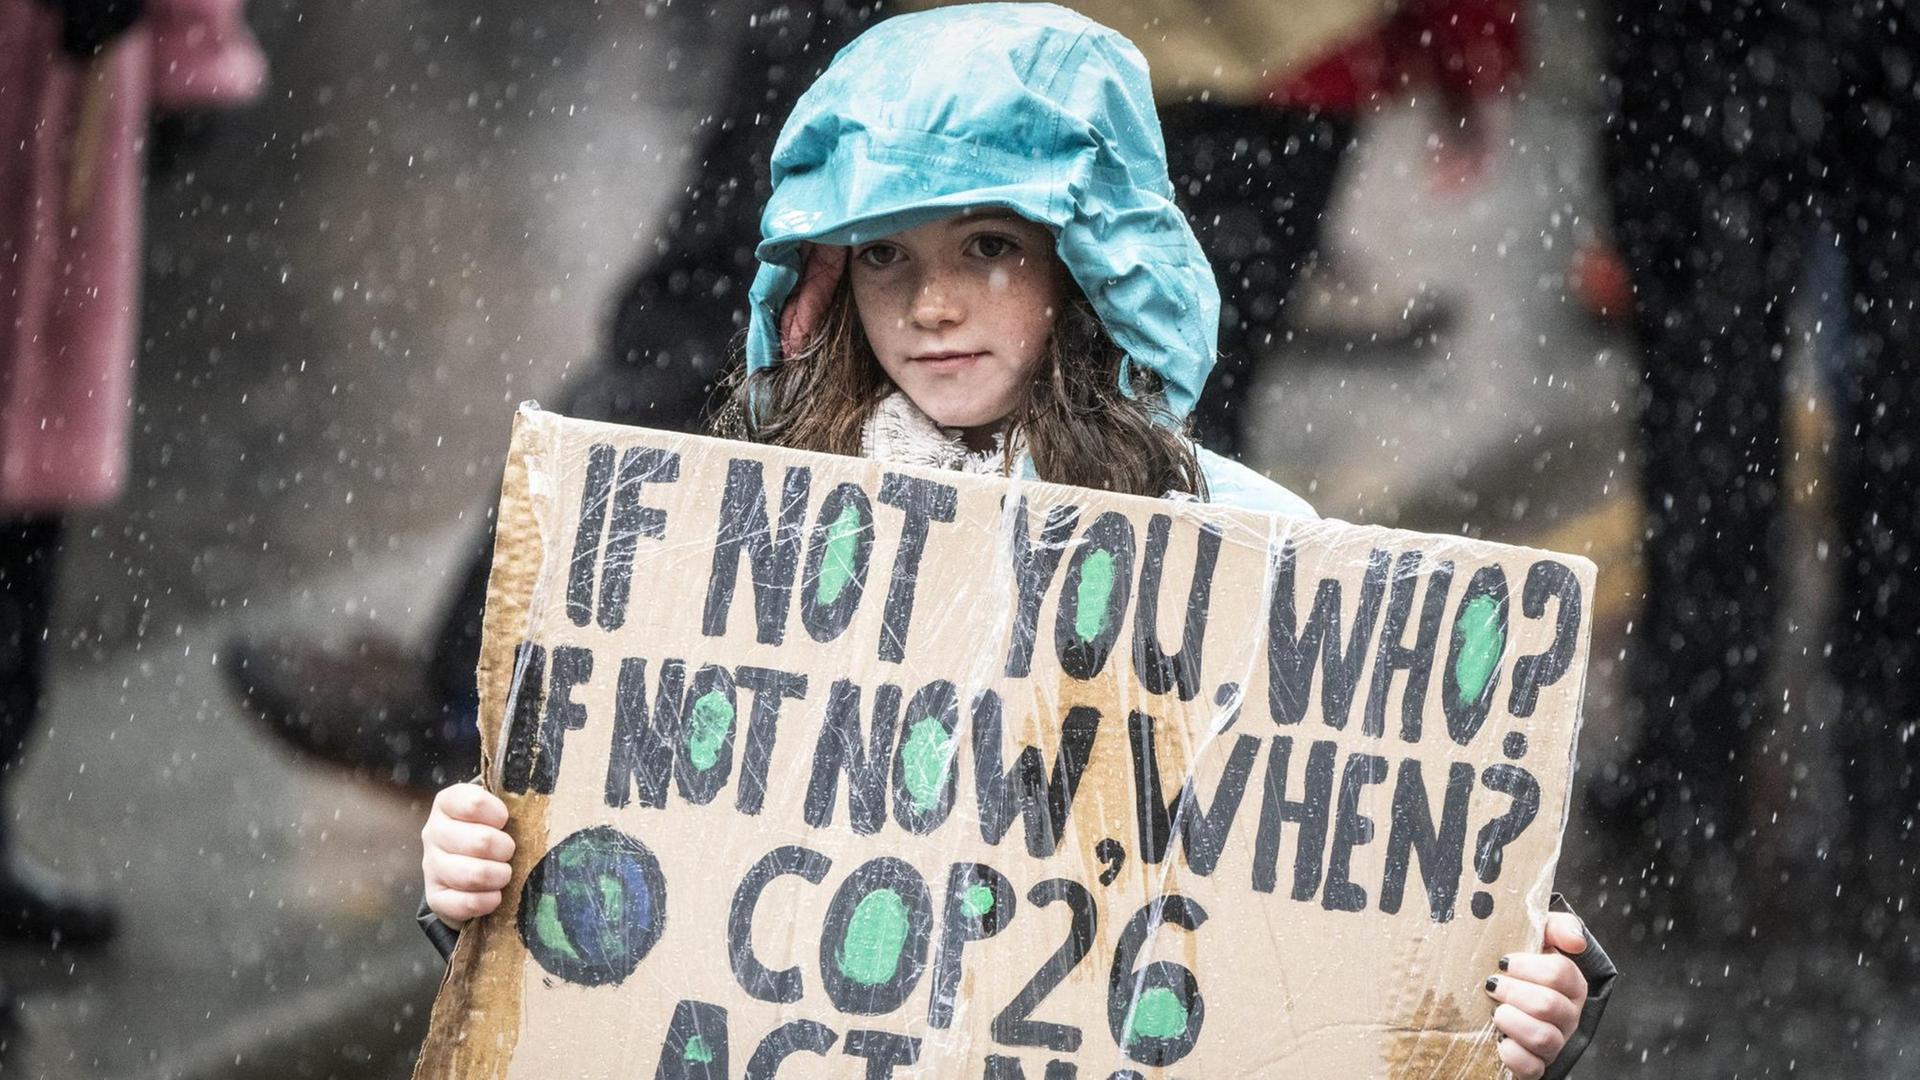 Ein junges Mädchen mit grüner Regenjacke trägt ein Pappschild, auf dem steht: "If not you, who? If not now, when? COP26 act now!! Es regnet.